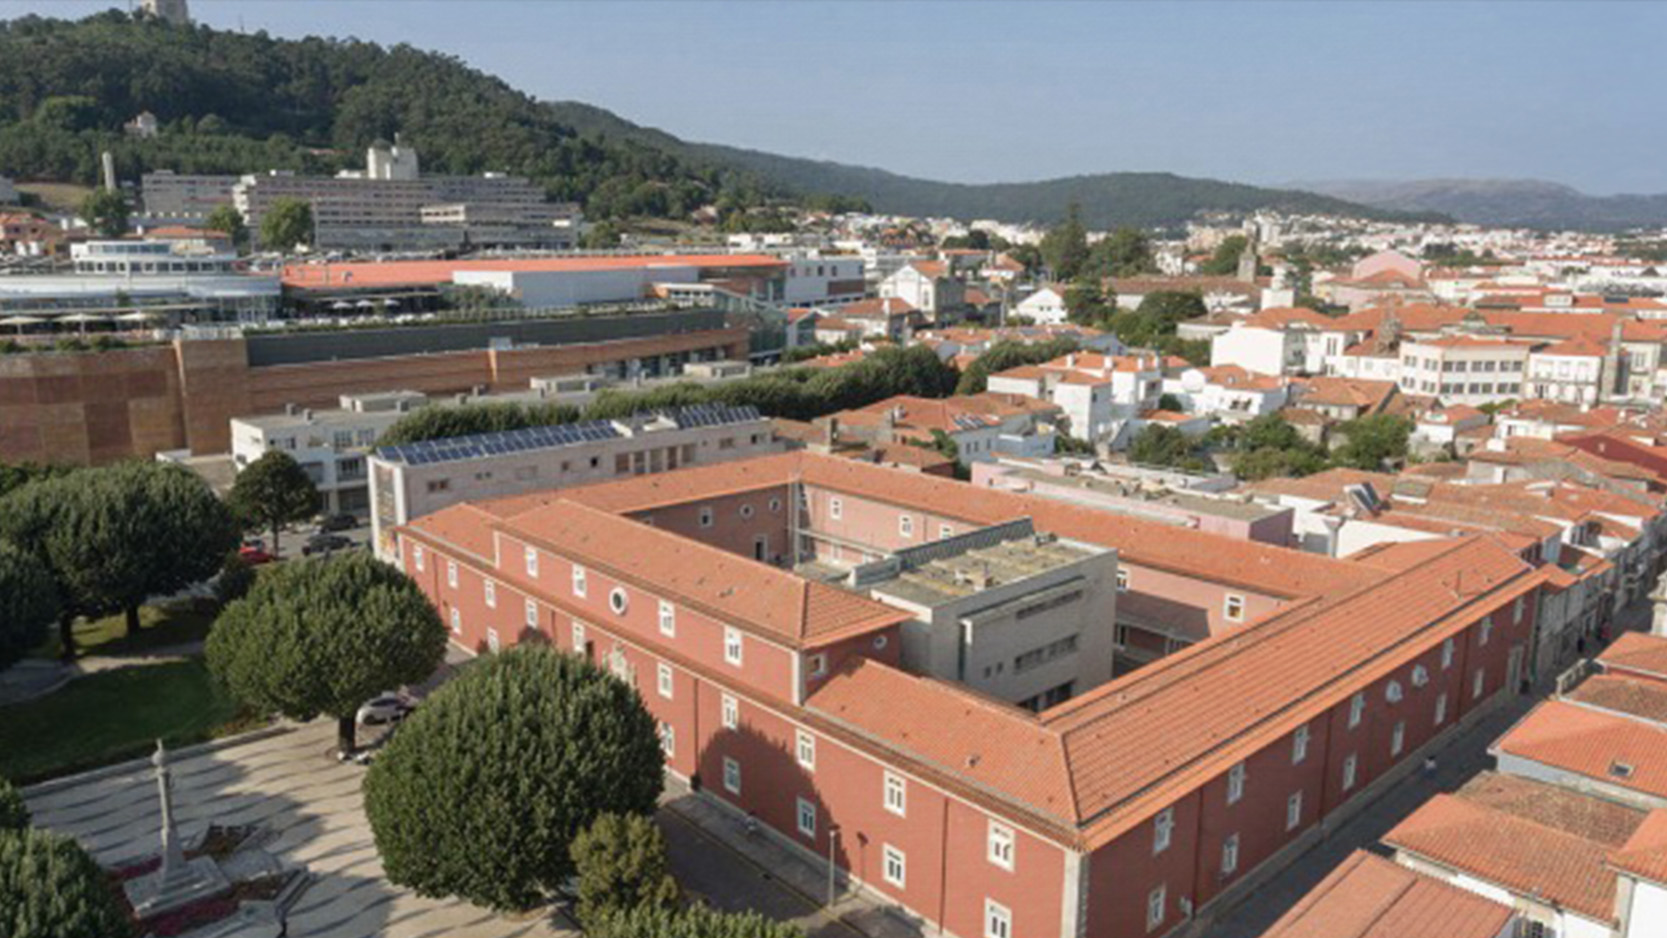 Bolsas Sociais EPIS 2023 - Instituto Politécnico de Viana do Castelo